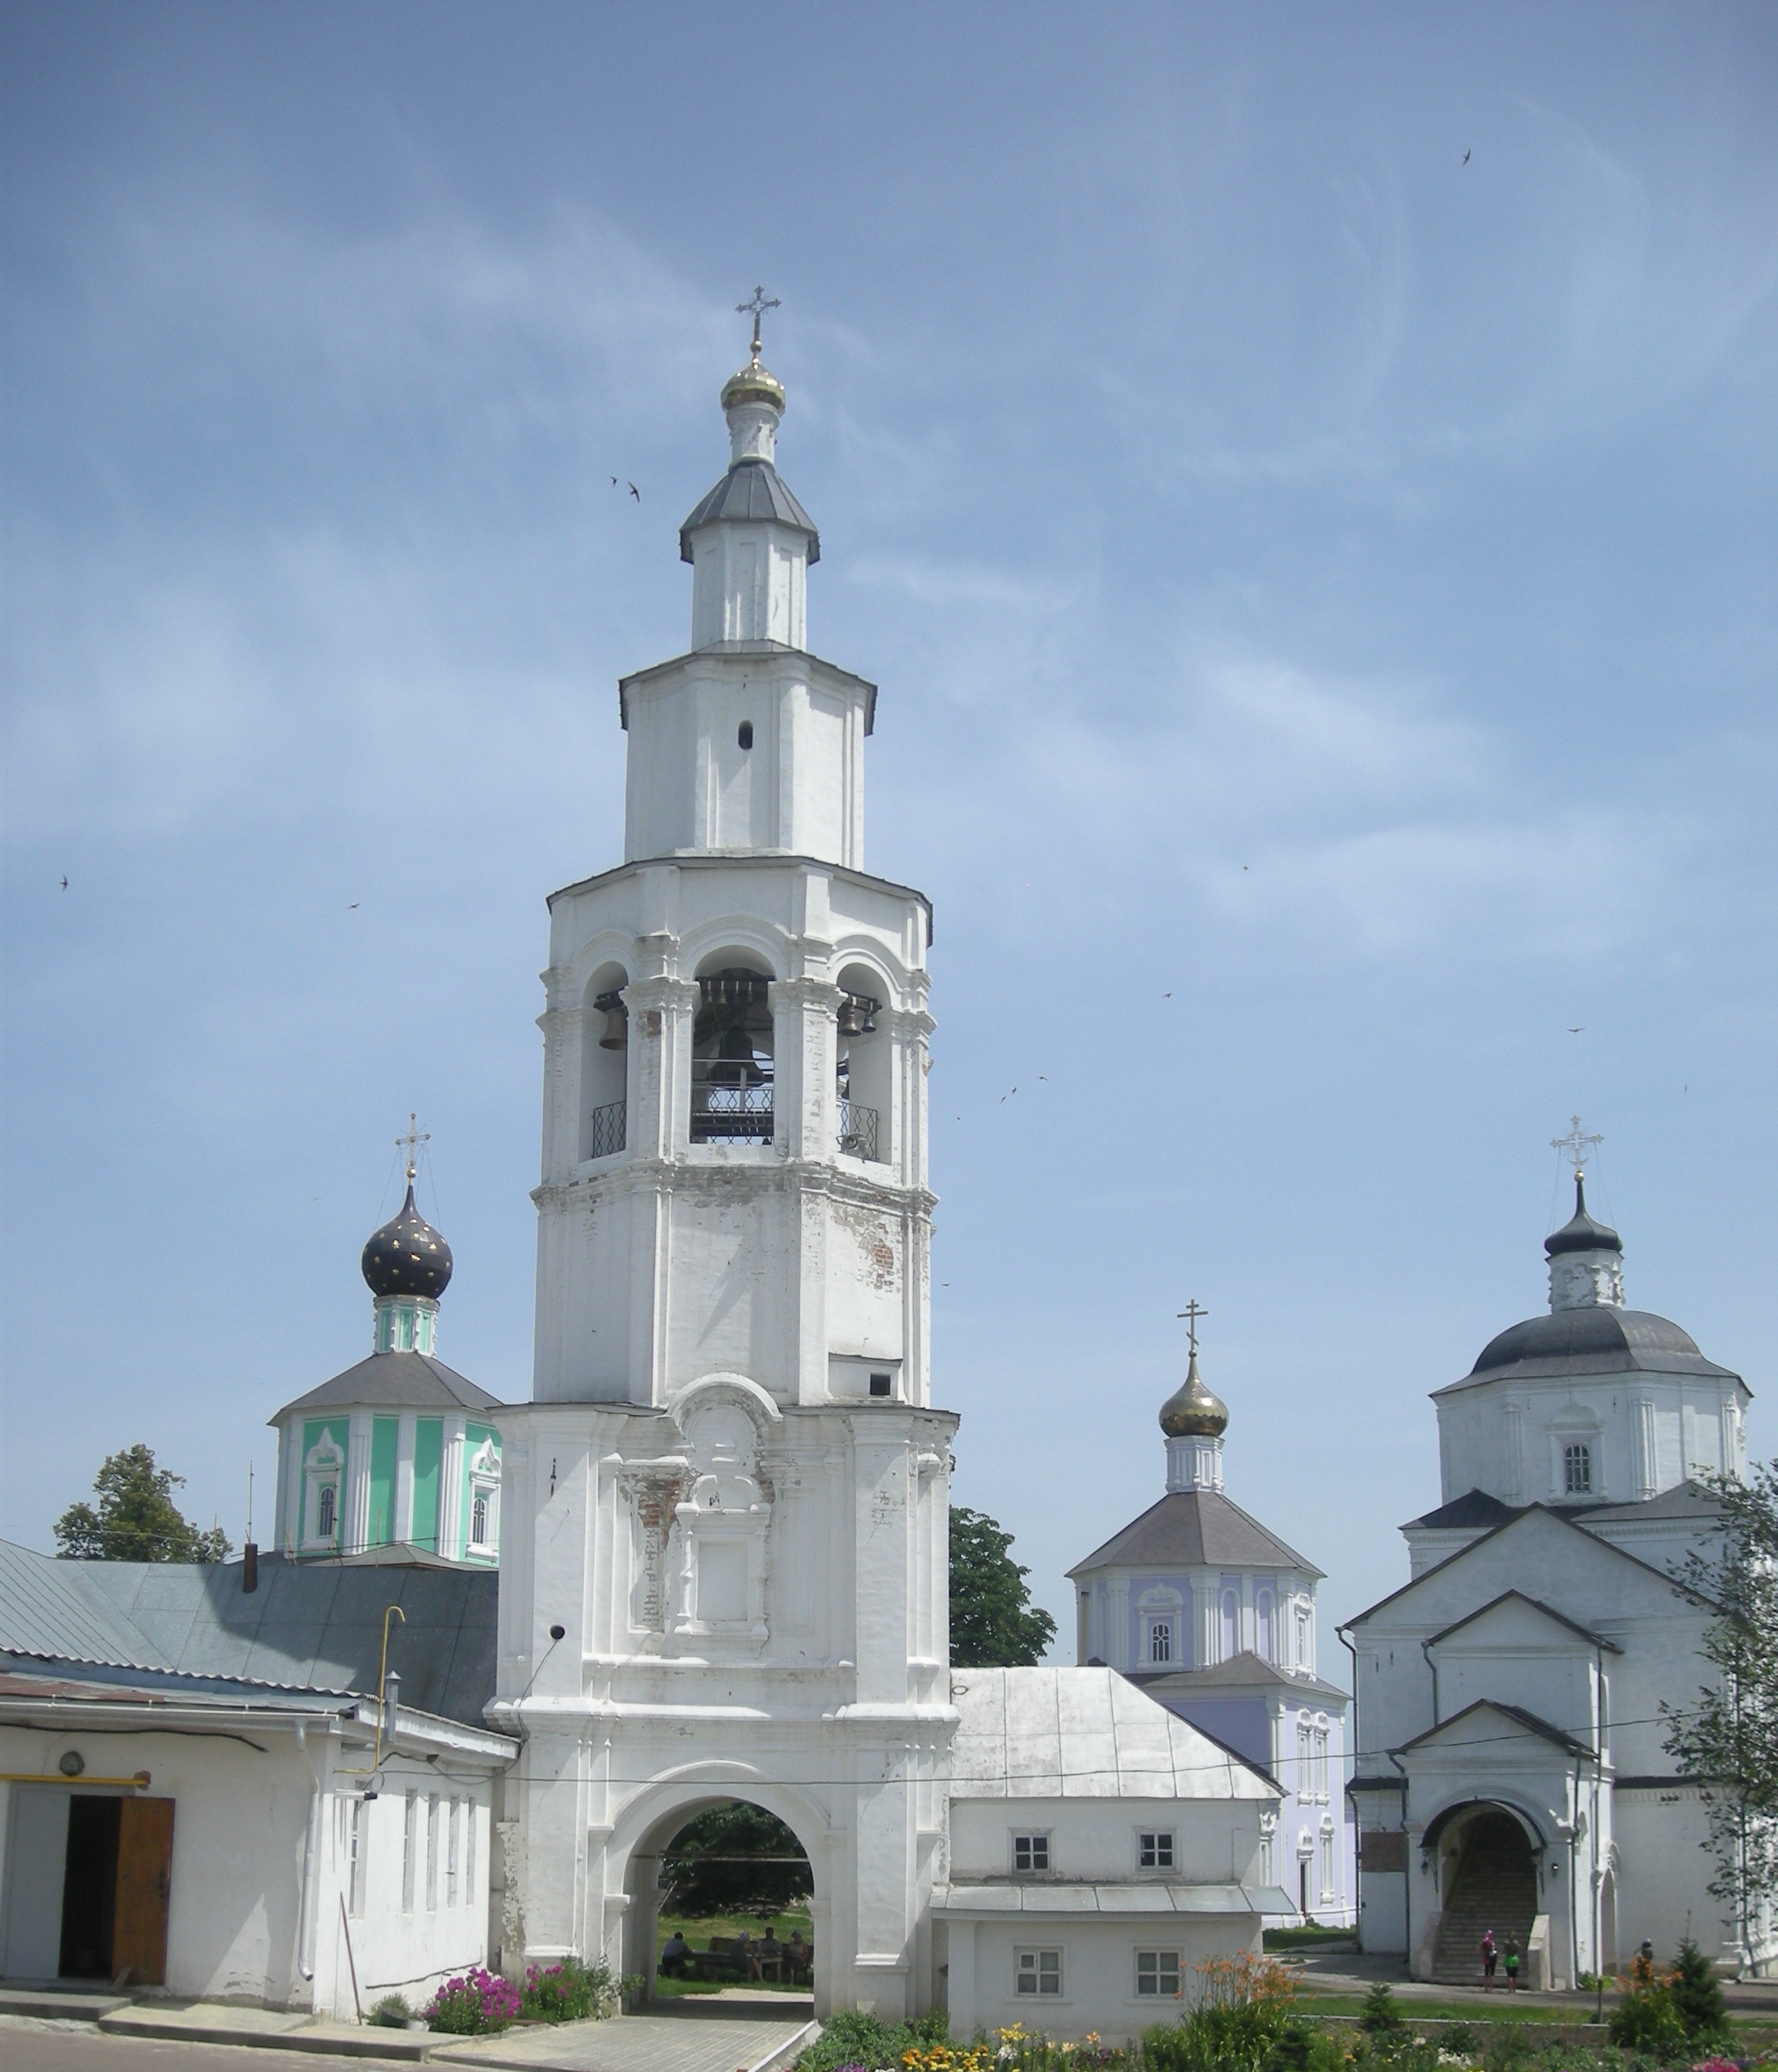 Рыльский свято николаевский мужской монастырь фото